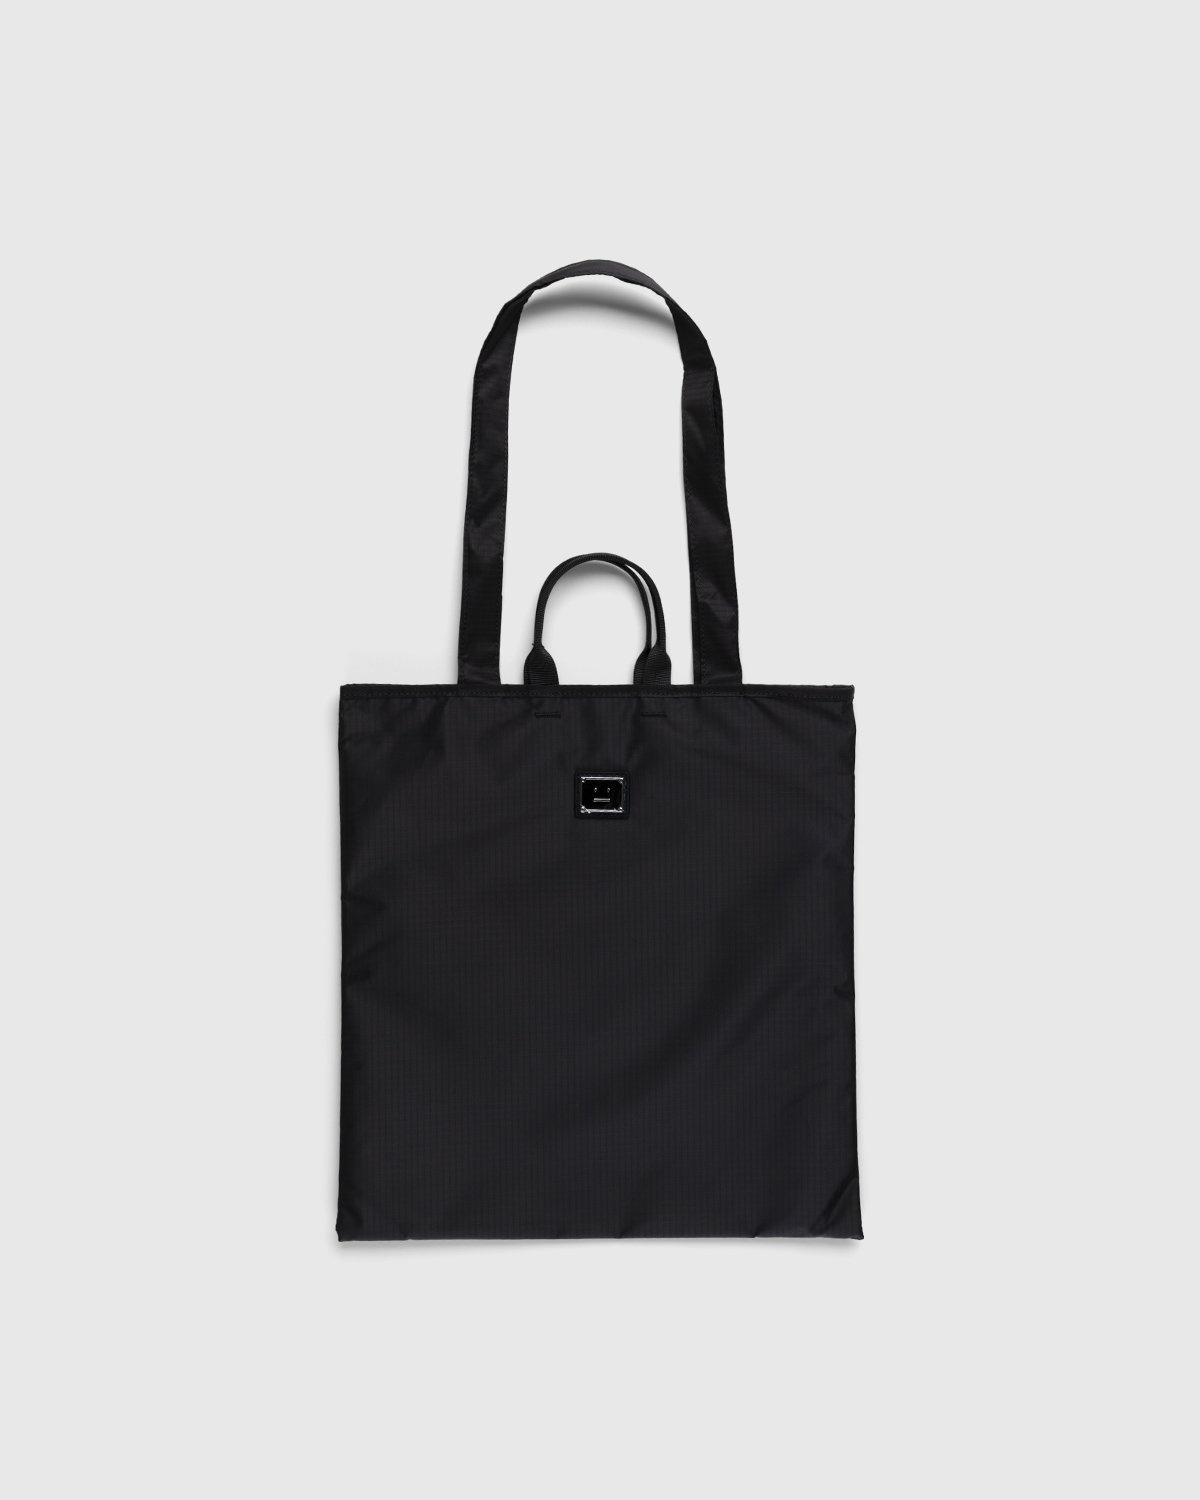 Acne Studios – Shoulder Tote Bag Black - Tote Bags - Black - Image 1